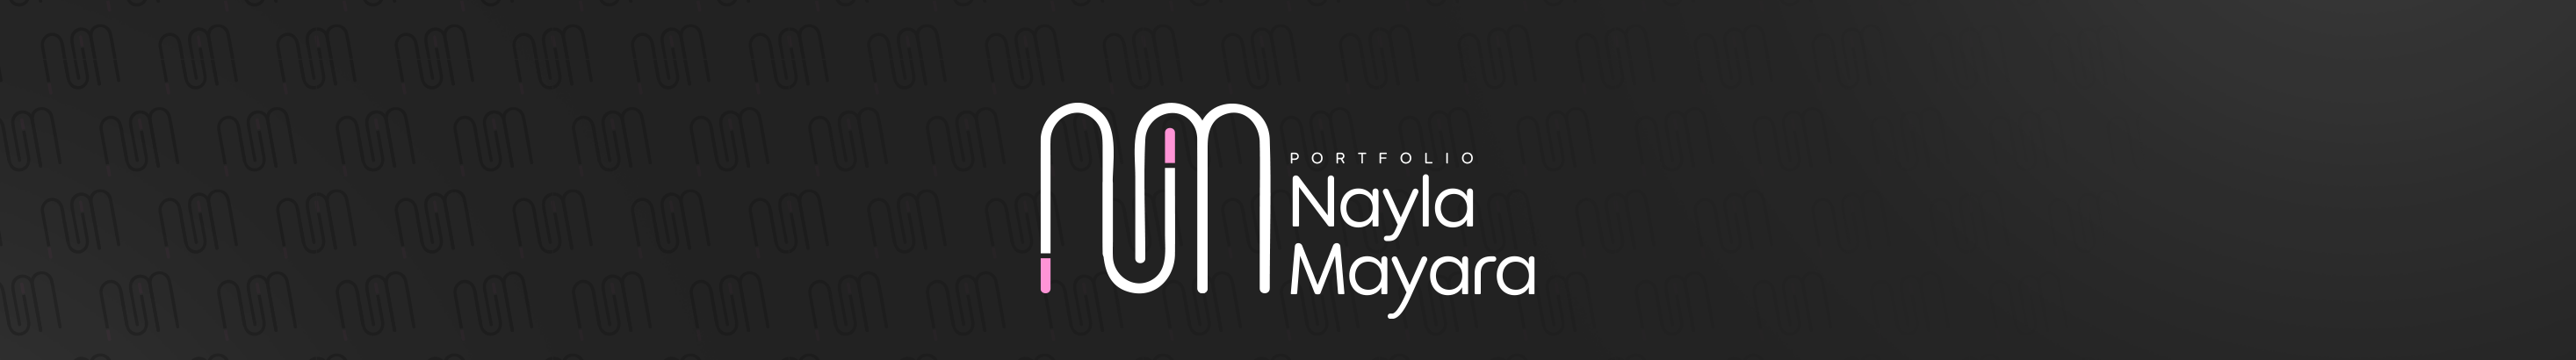 Banner de perfil de Nayla Mayara